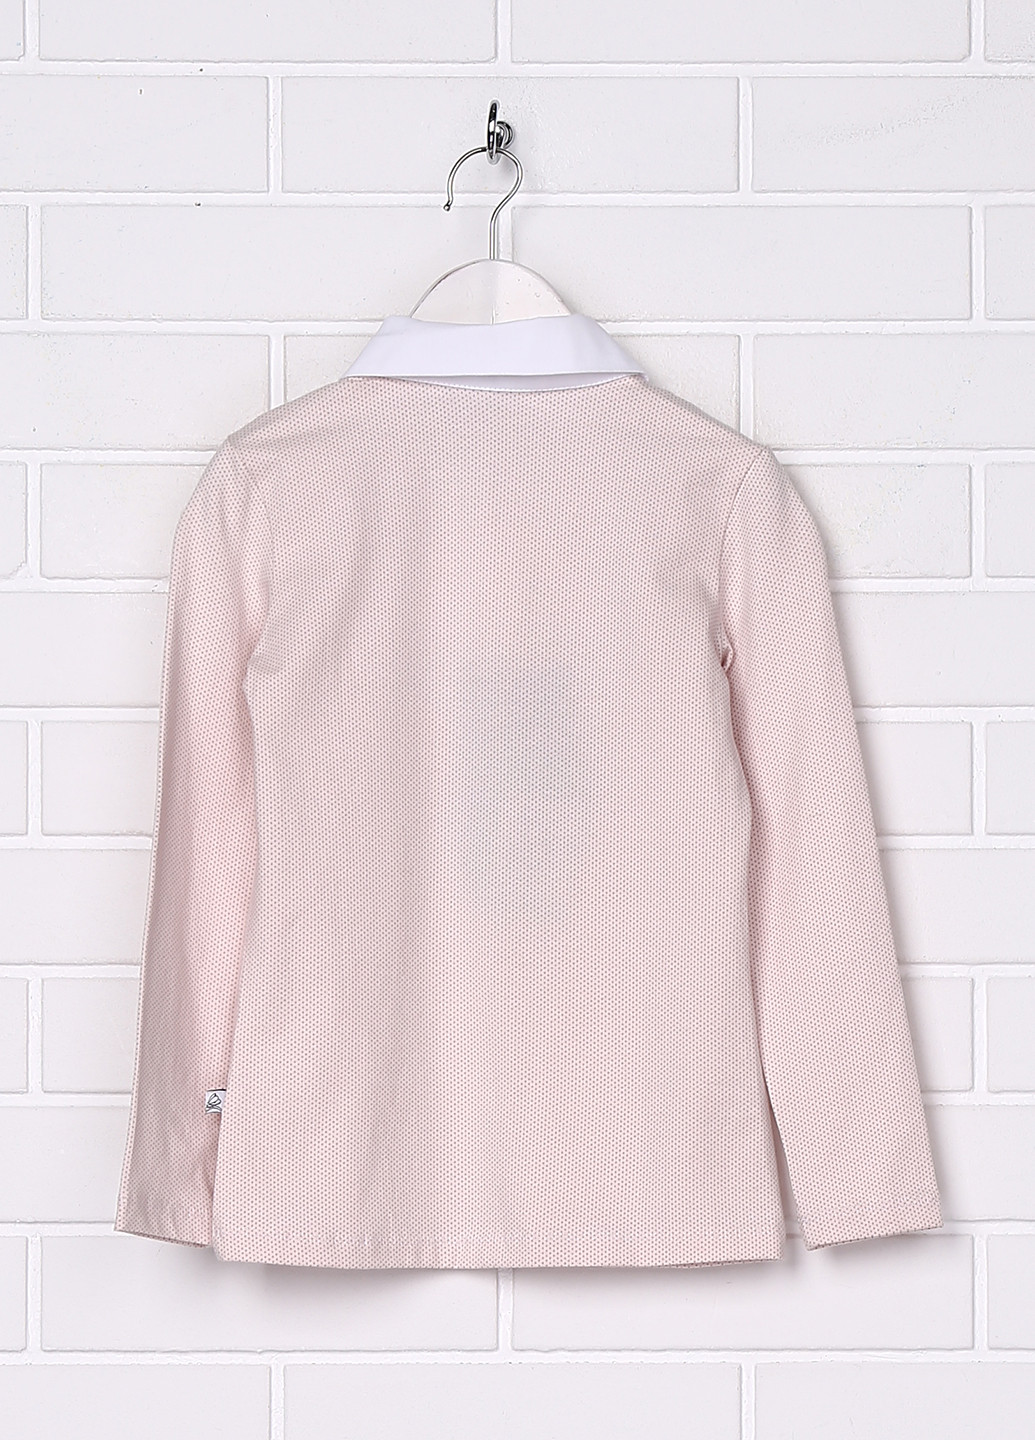 Бледно-розовая в горошек блузка с длинным рукавом Sasha демисезонная